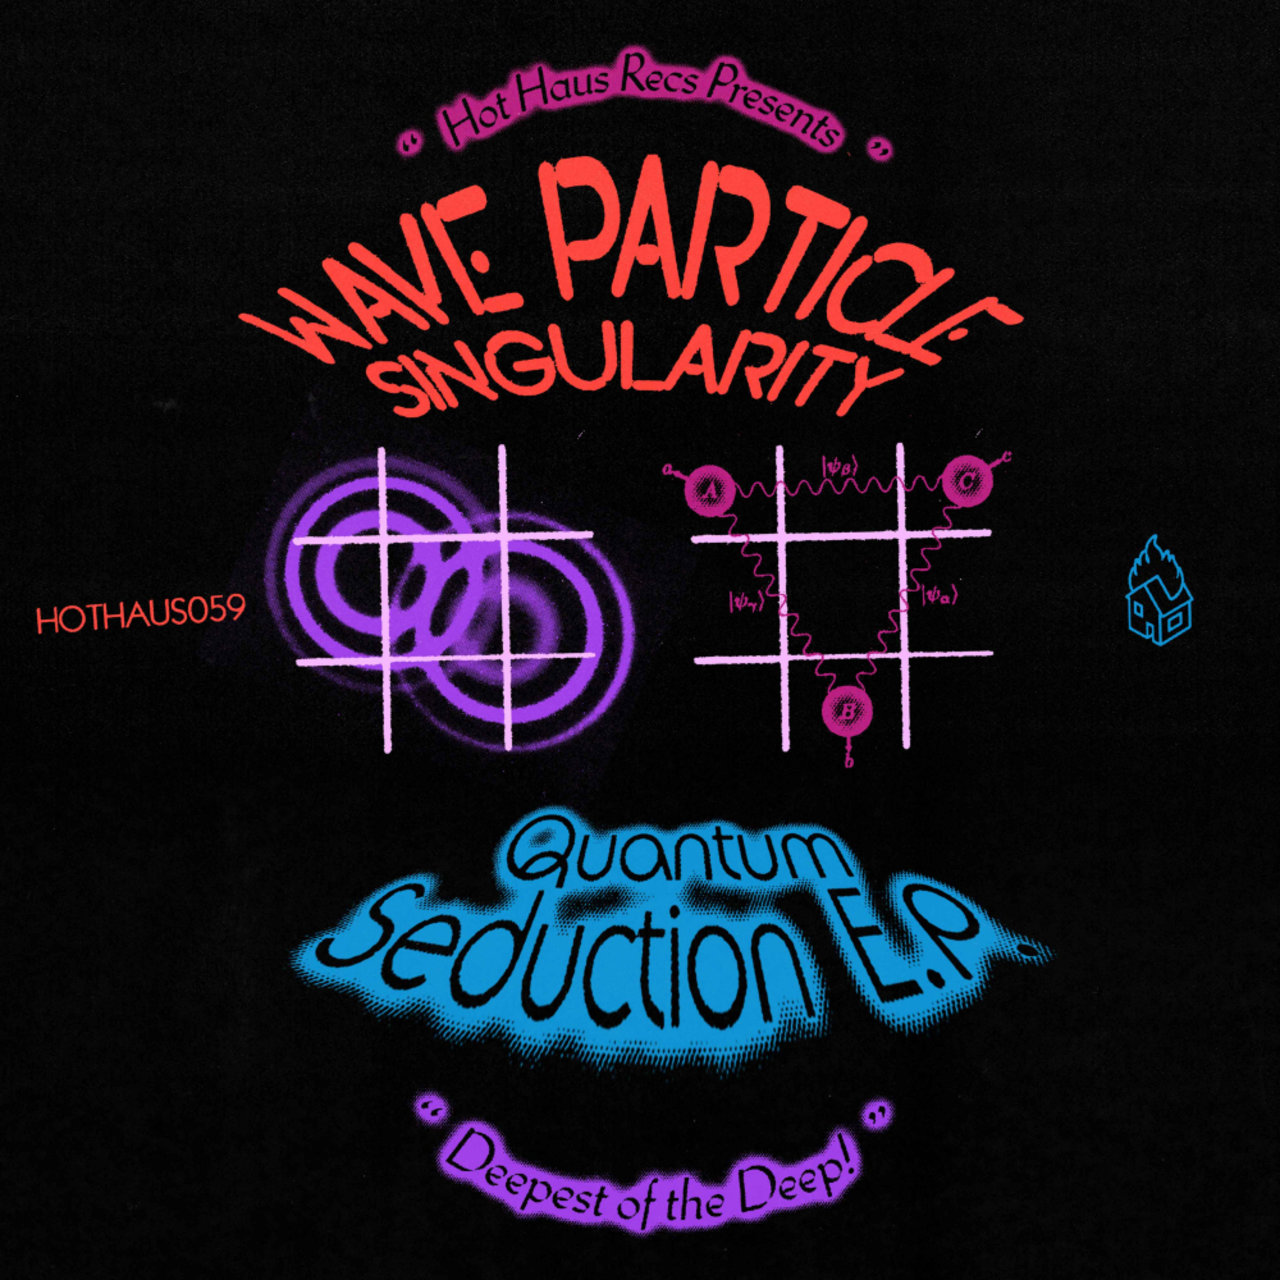 Wave Particle Singularity - Quantum Seduction EP [HOTHAUS059]